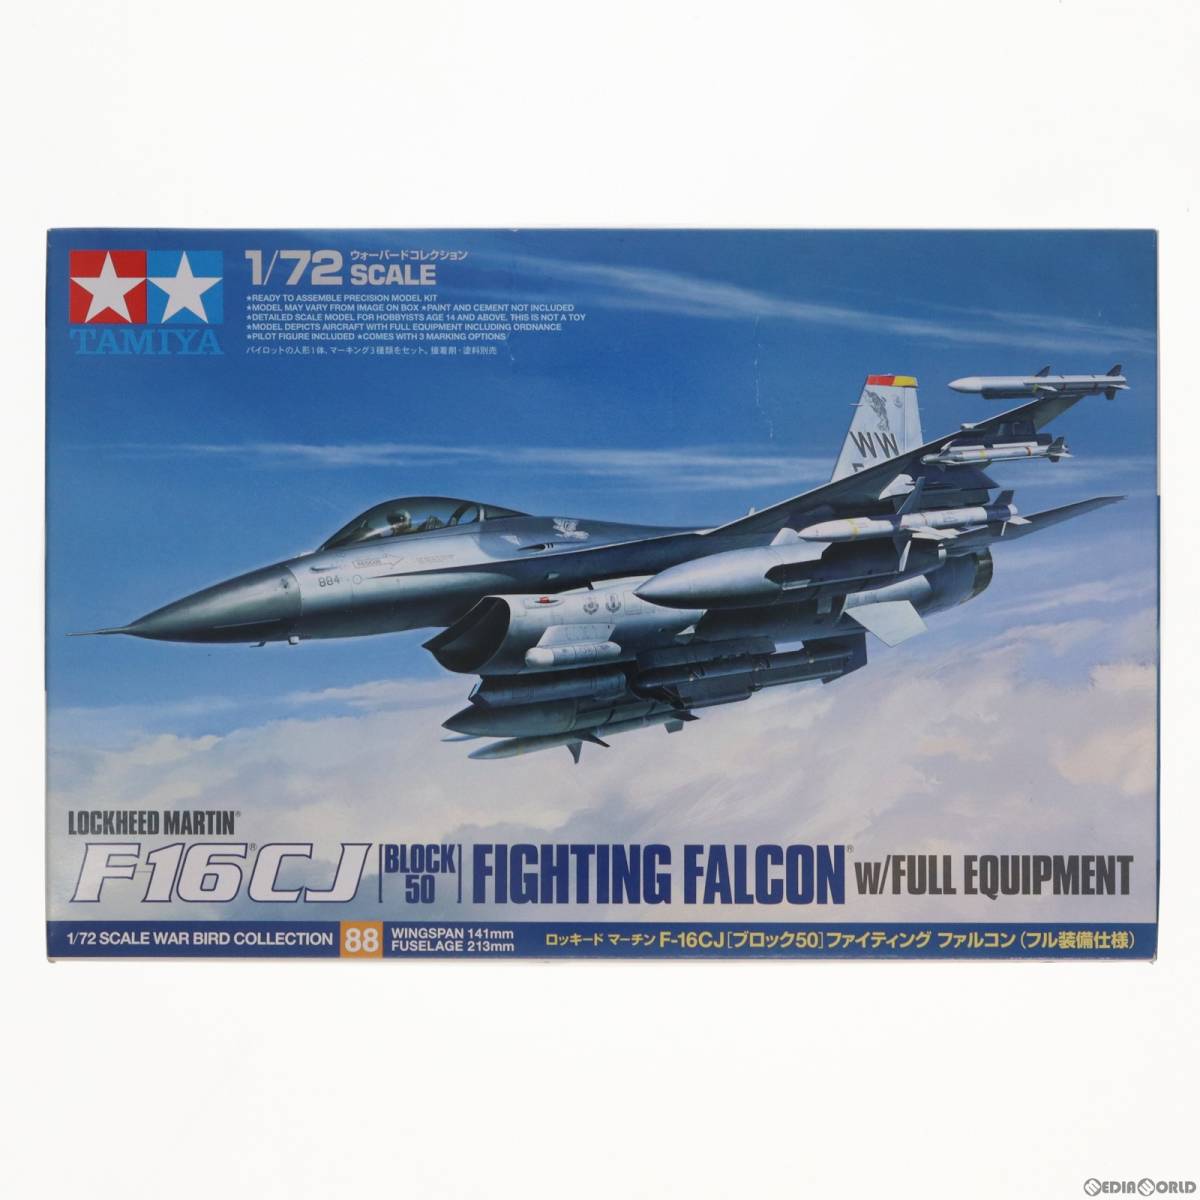 【中古】[PTM]ウォーバードコレクション 1/72 ロッキード マーチン F-16CJ (ブロック50) ファイティング ファルコン(フル装備仕様) プラモ_画像1